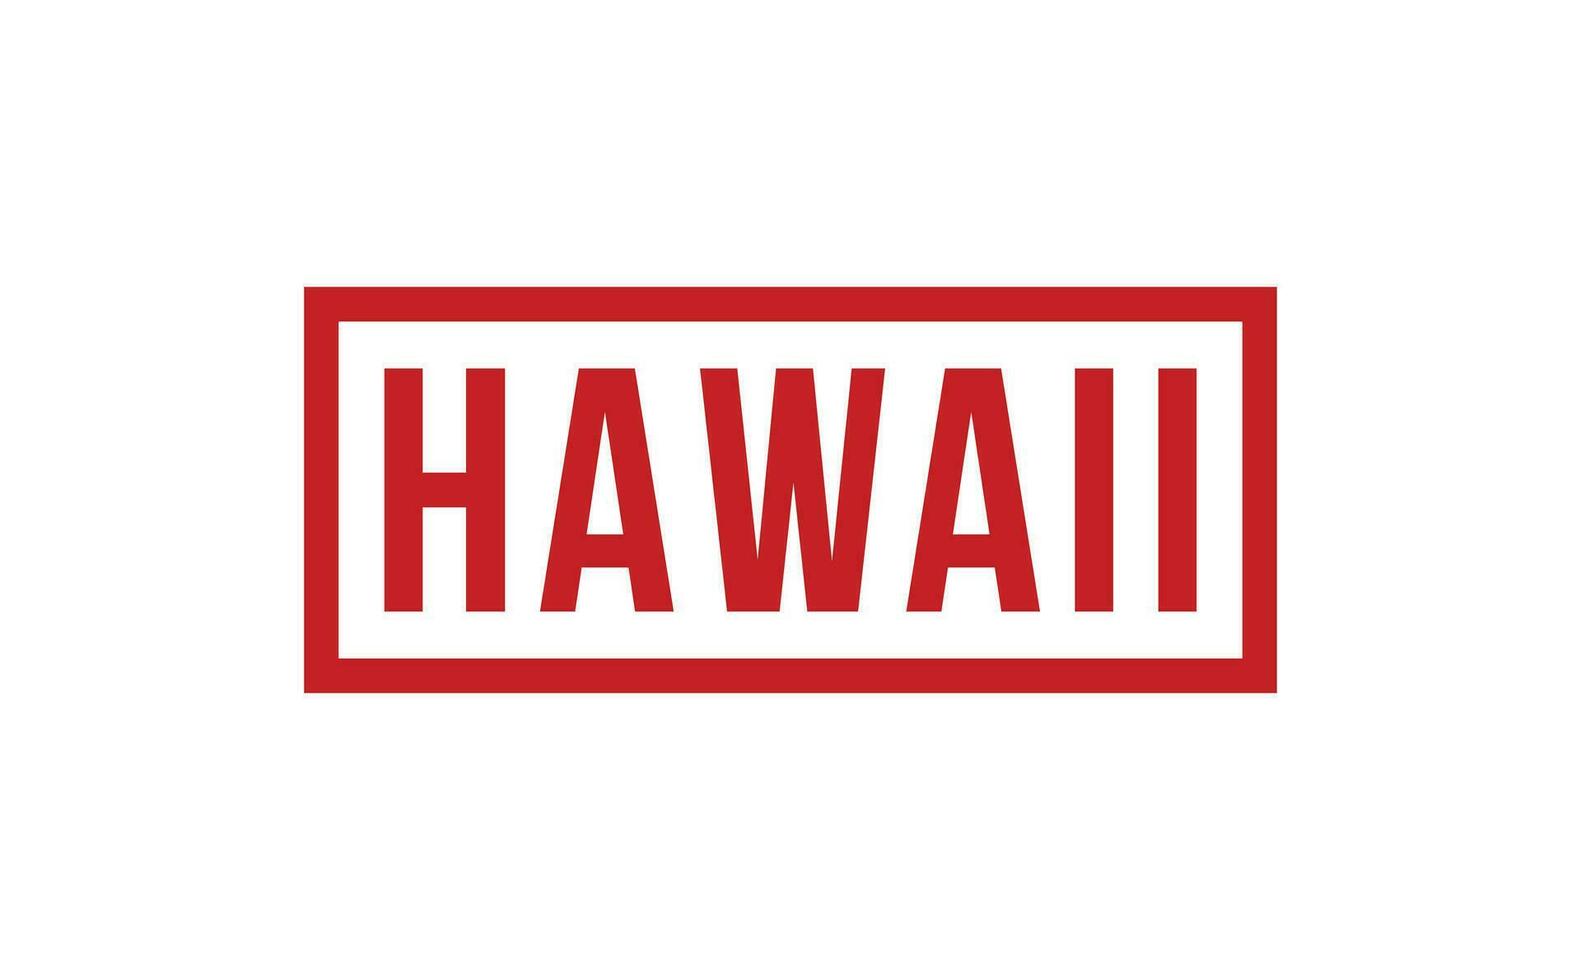 Hawaii rubber postzegel zegel vector